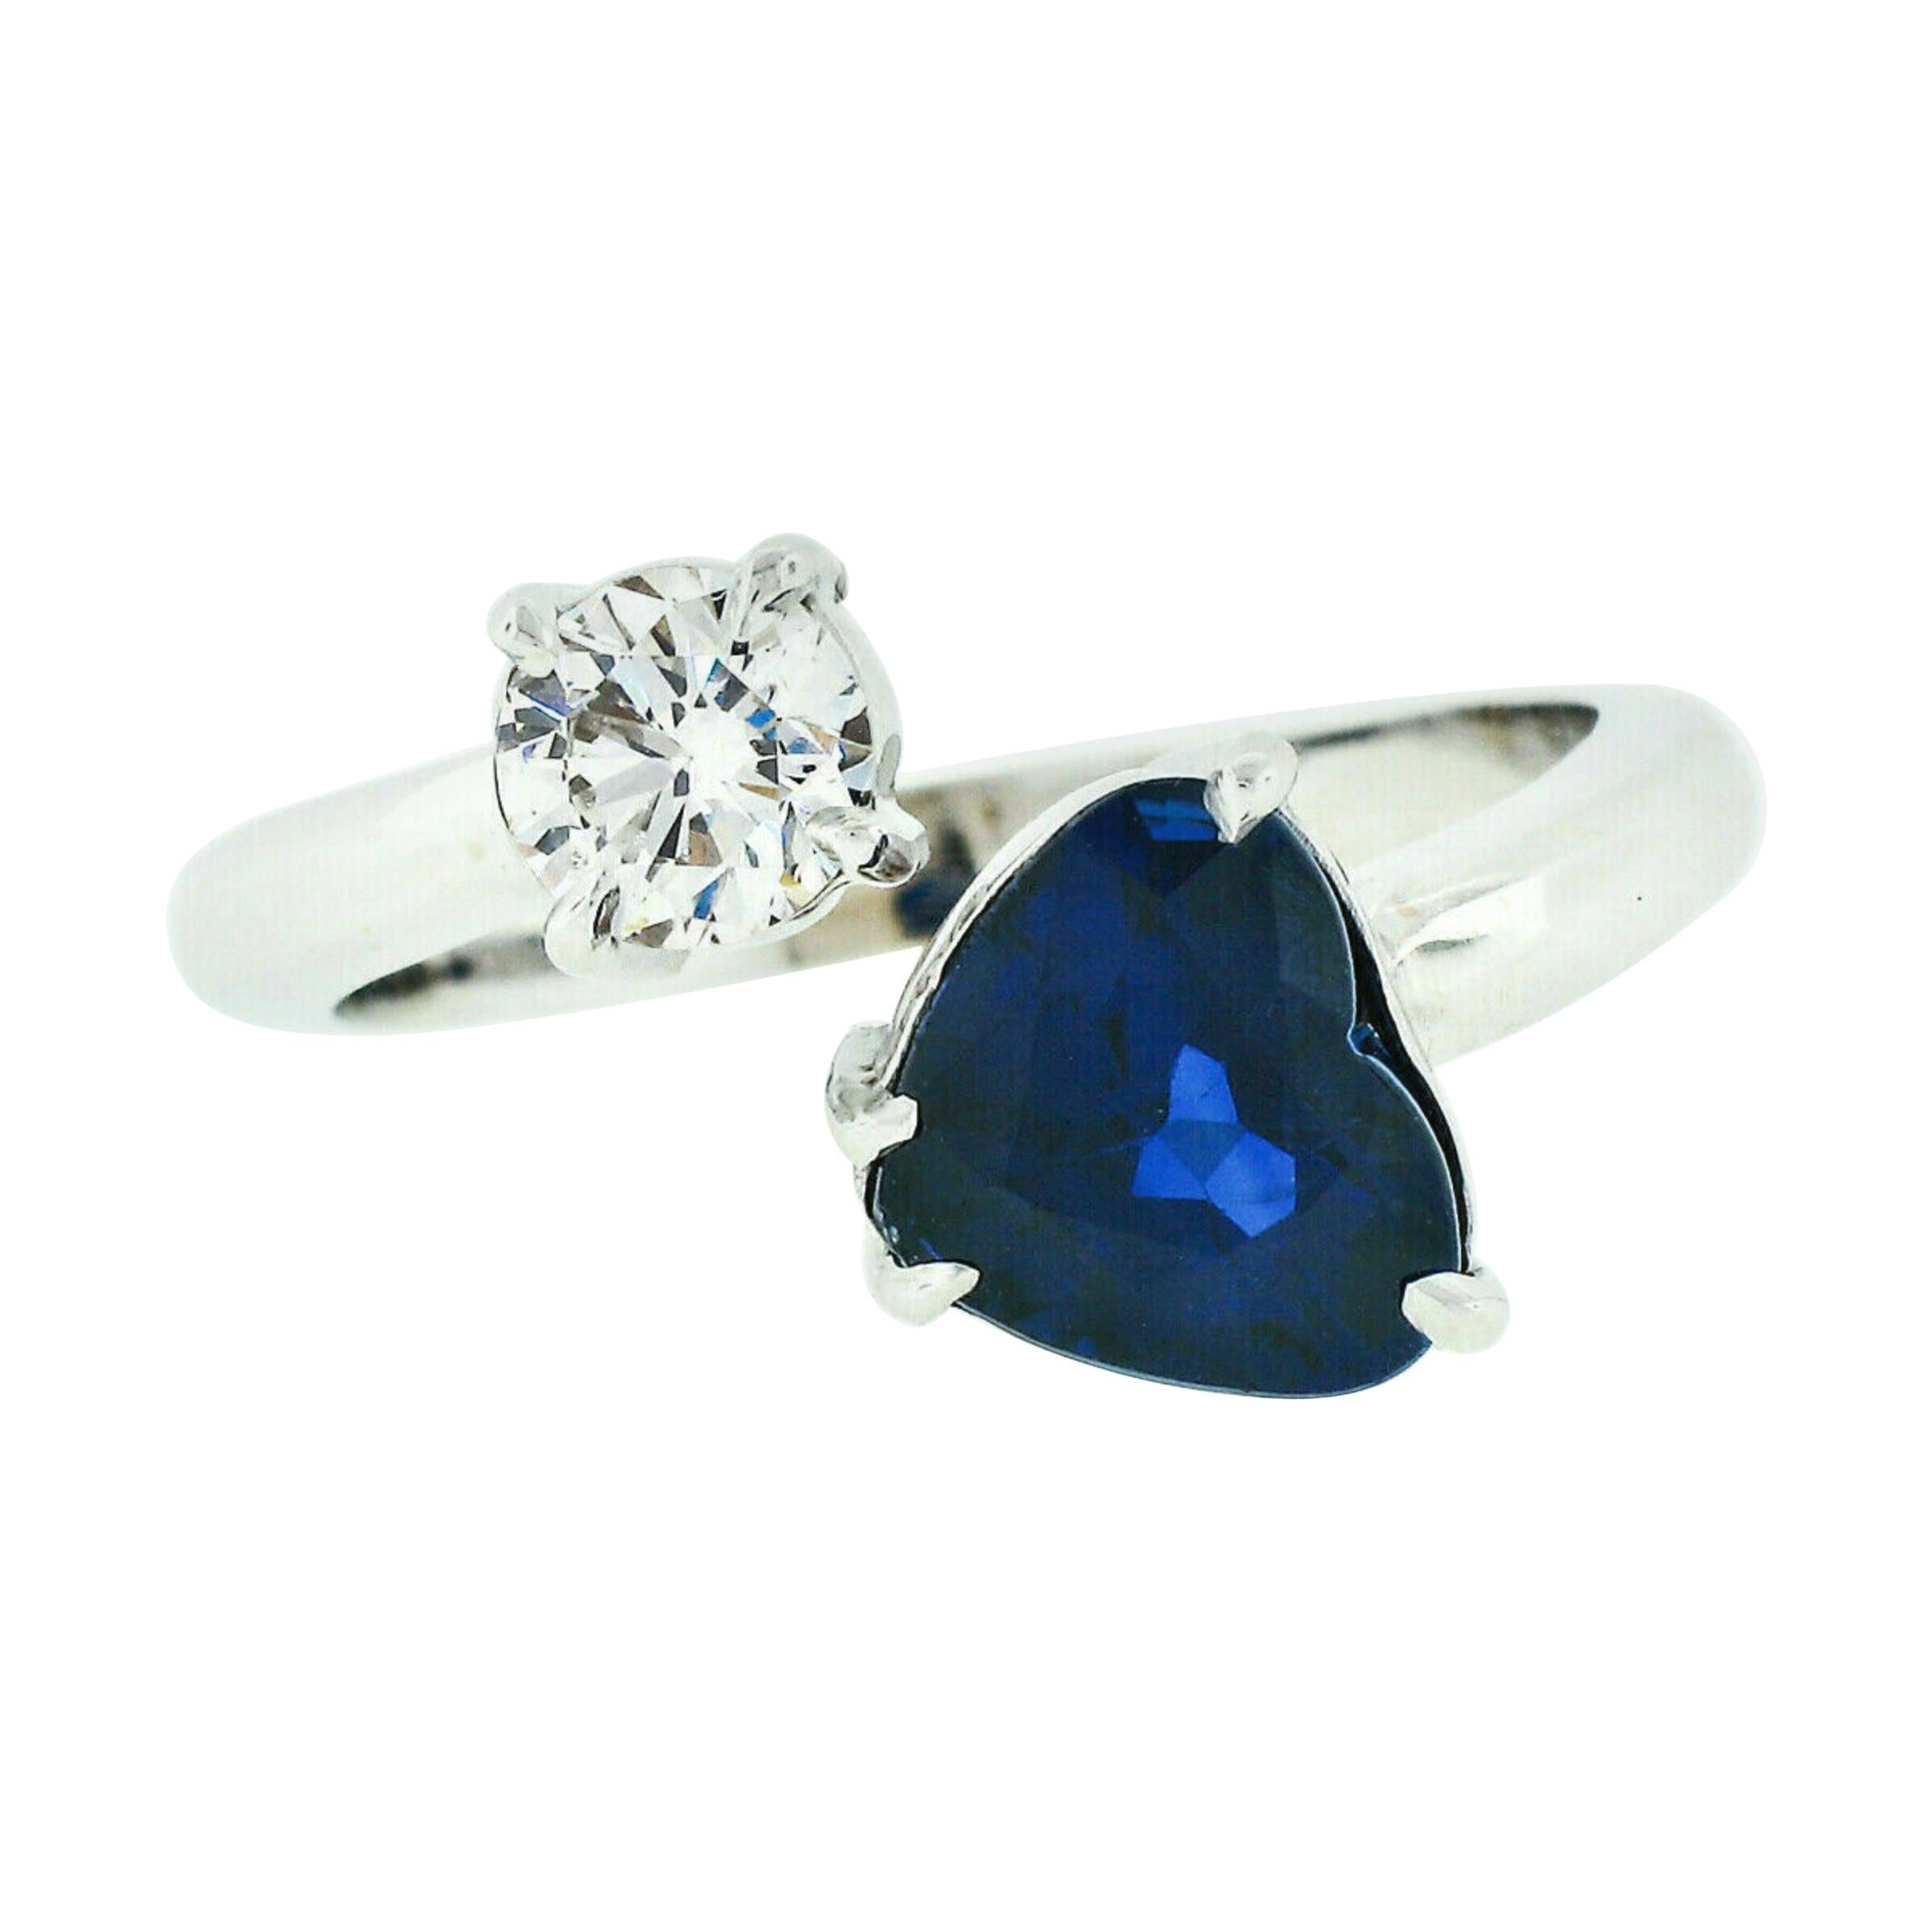 Bague bypass Moi et Toi en or blanc 18 carats avec saphir bleu en forme de cœur de 2,71 carats certifié GIA et diamants